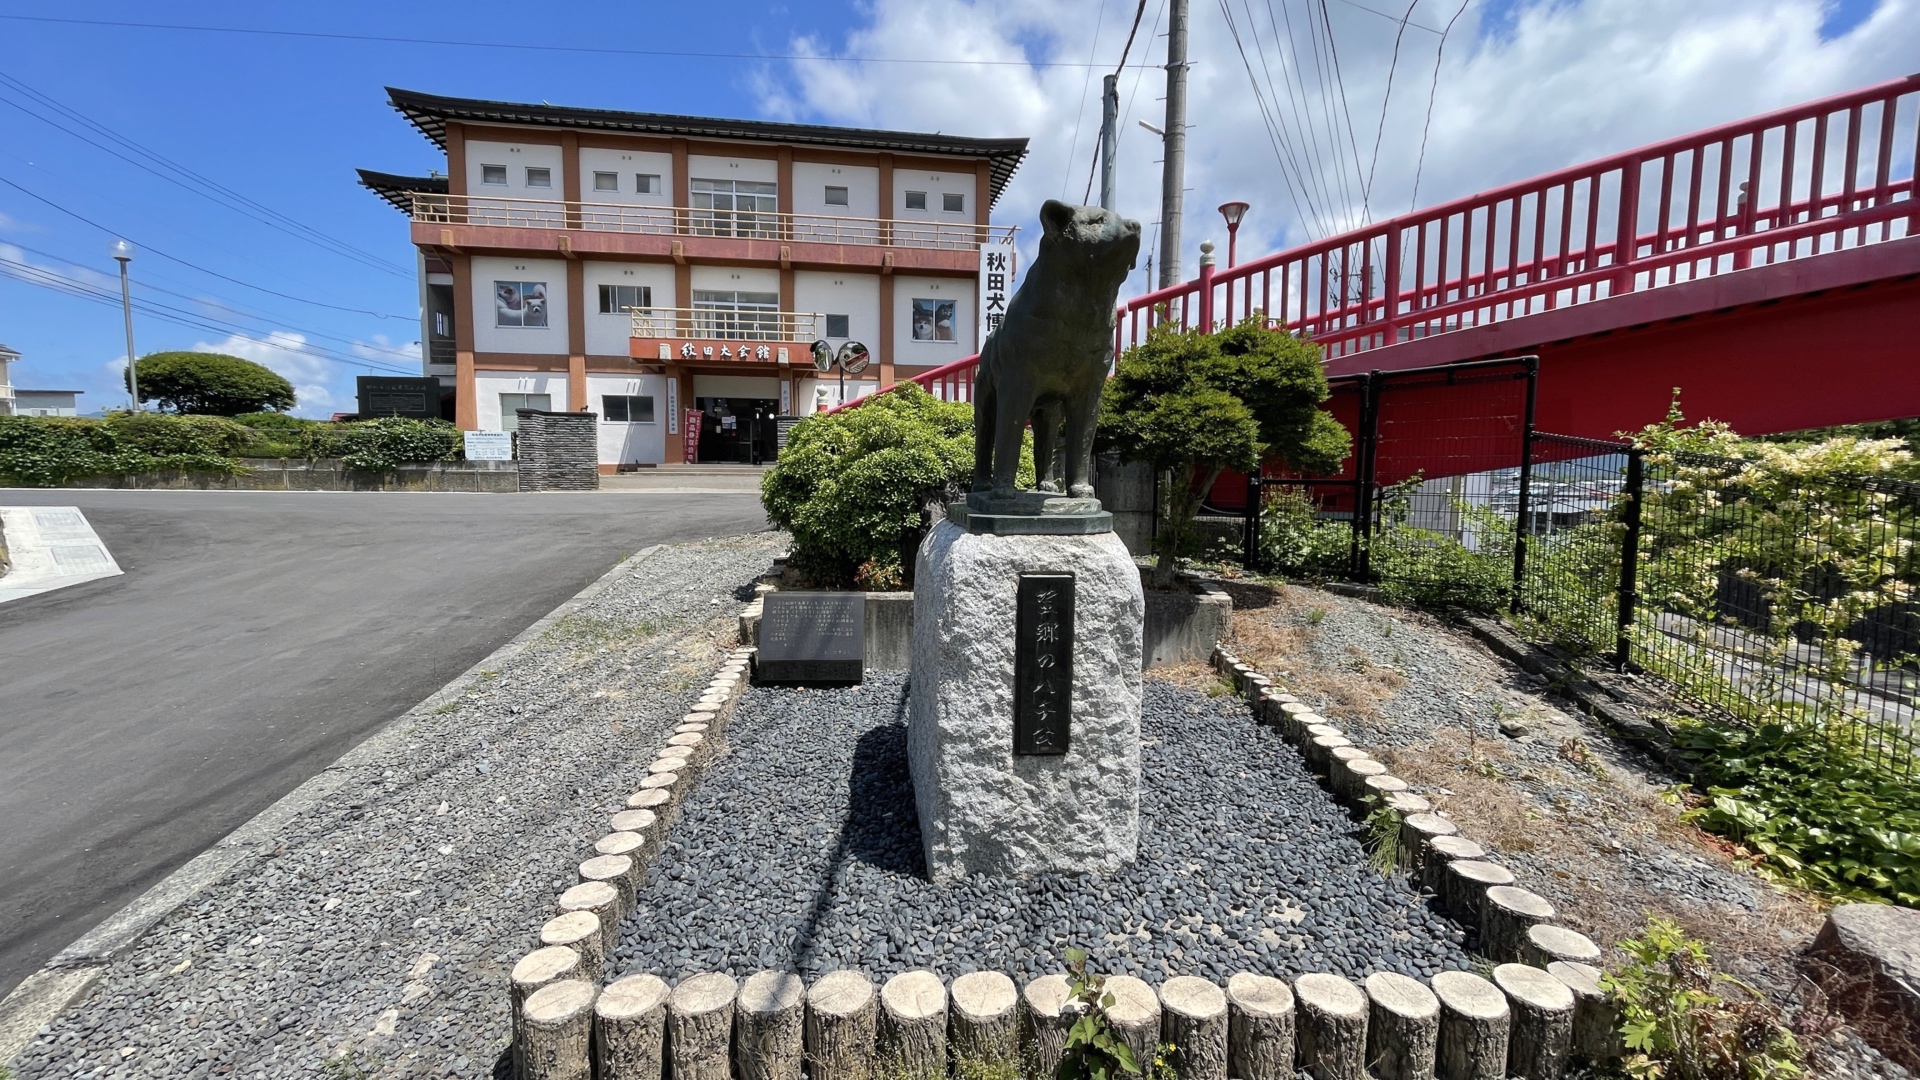 Eine weitere Hachiko-Statue steht vor dem Akita Dog Museum in Odate.